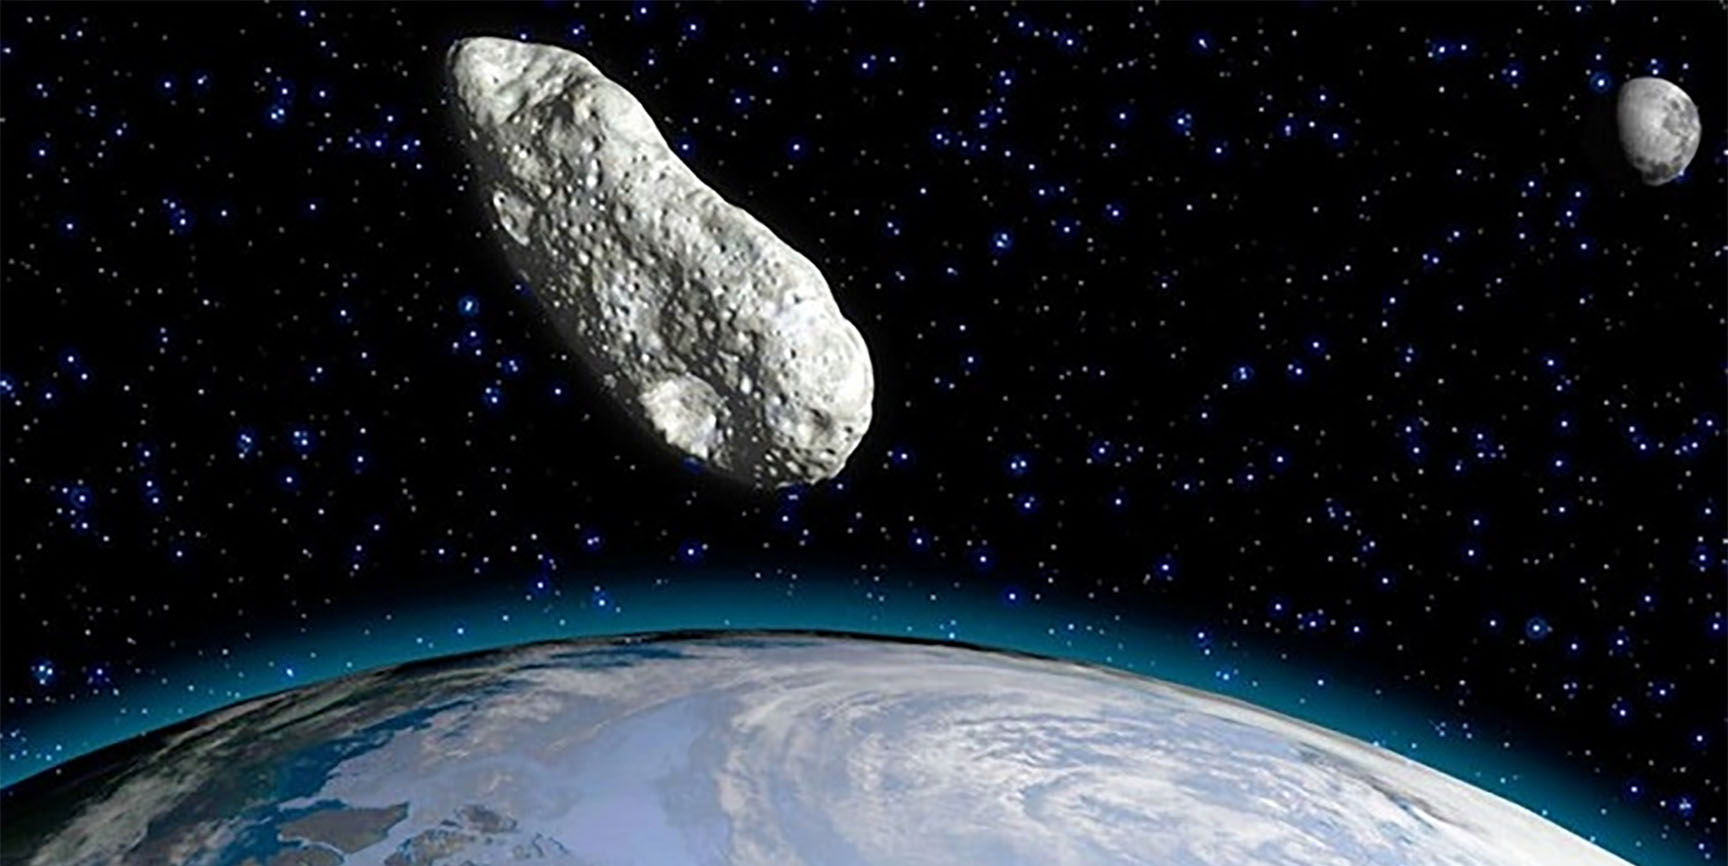 Un asteroide del tamaño de un edificio pasará muy cerca de la Tierra hoy Martes